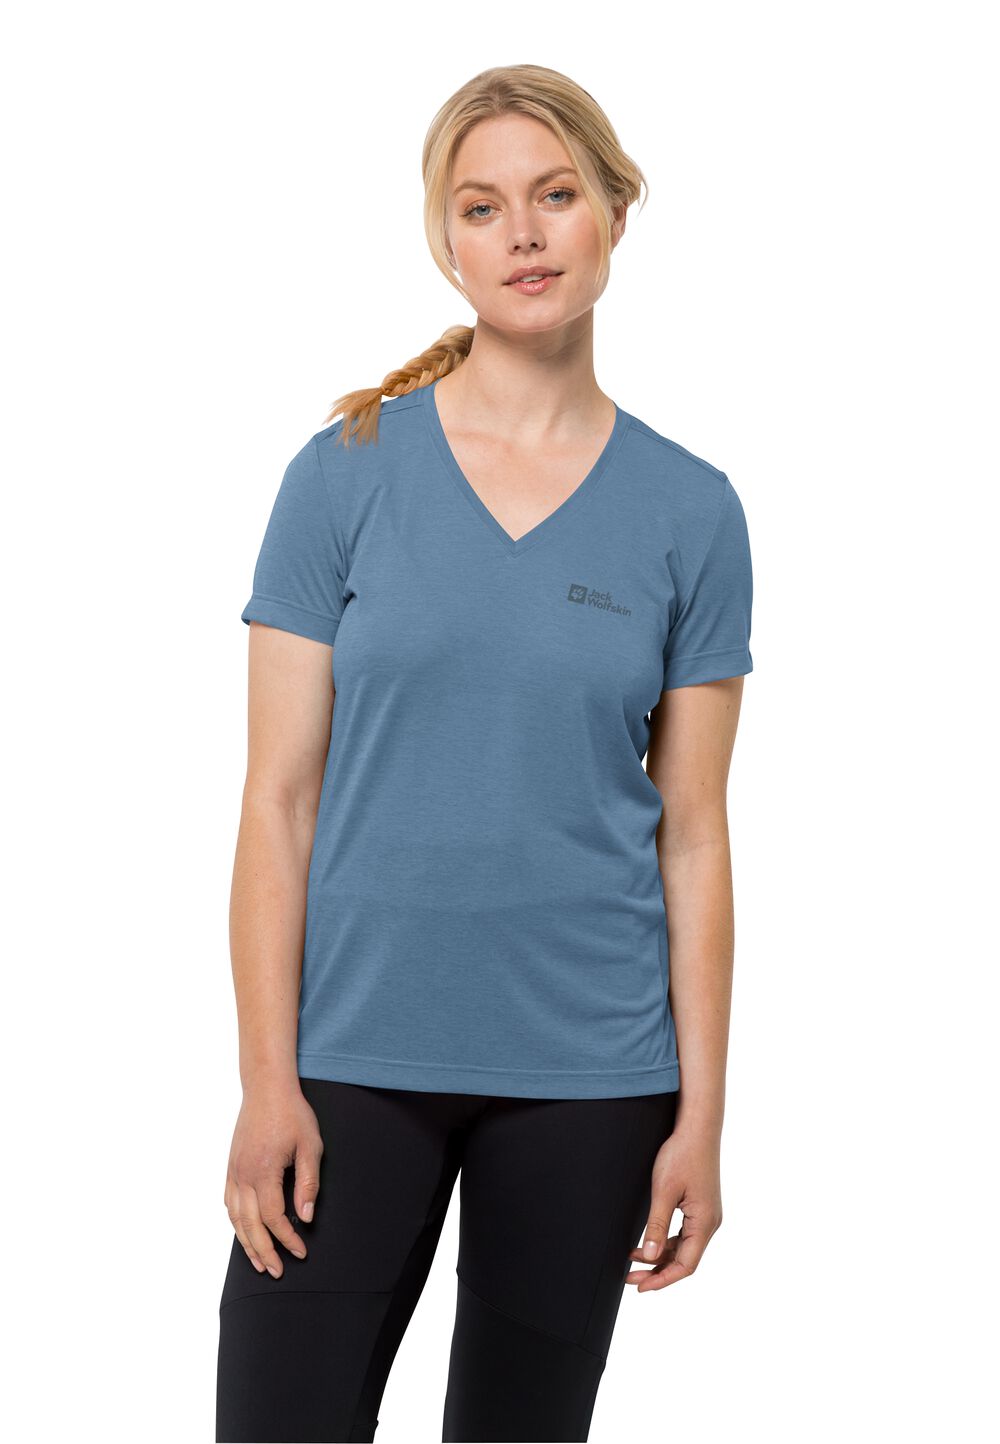 Jack Wolfskin Crosstrail T-Shirt Women Functioneel shirt Dames XL elemental blue elemental blue